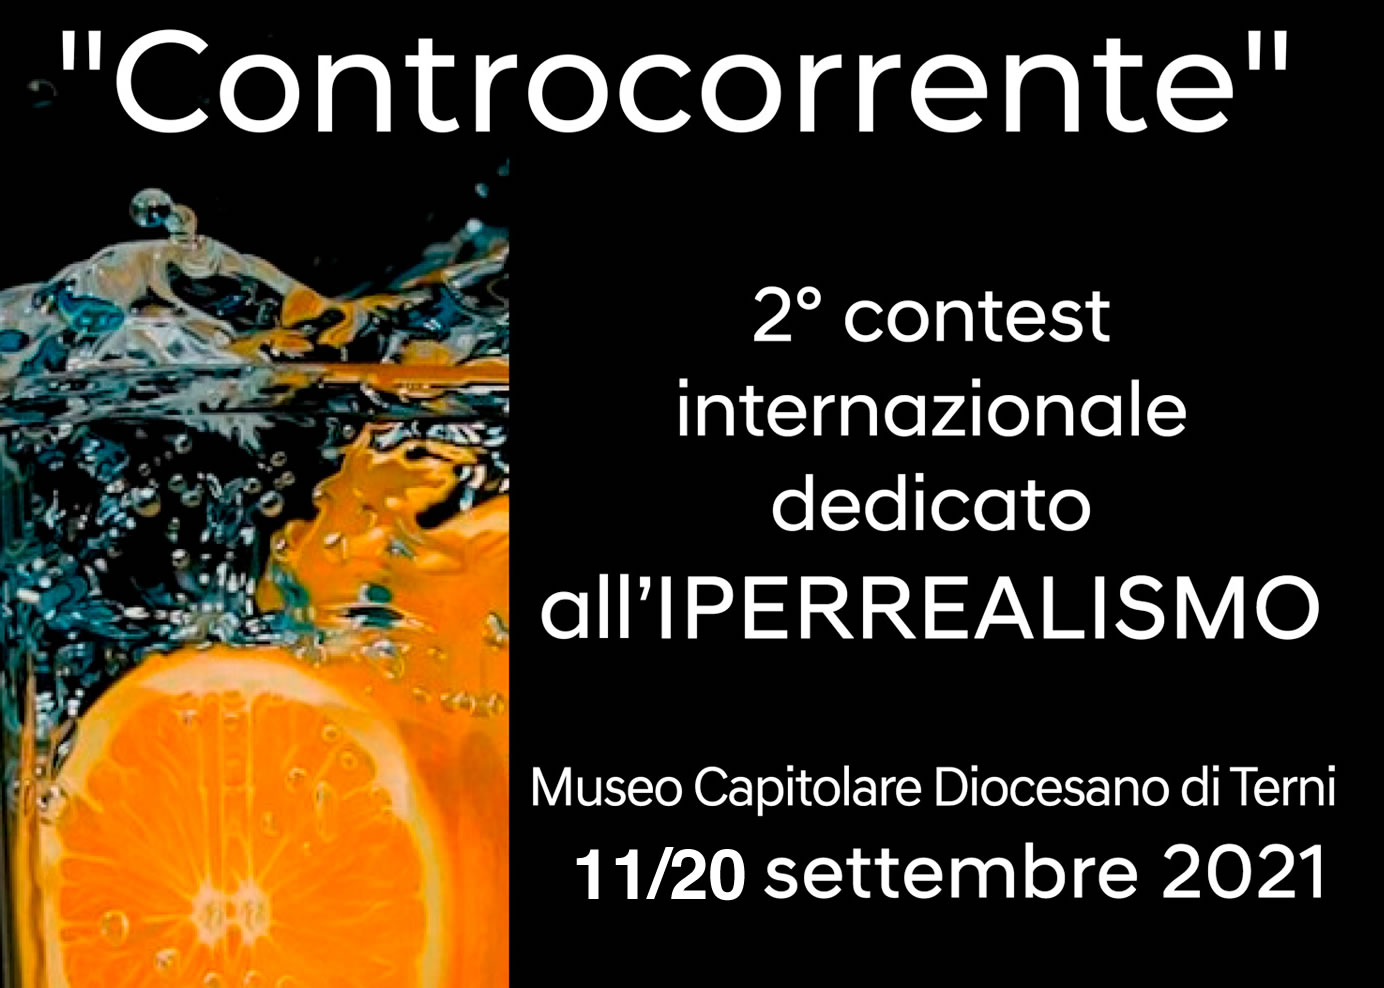 CONTROCORRENTE – 2° edizione contest internazionale dedicato all’Iperrealismo